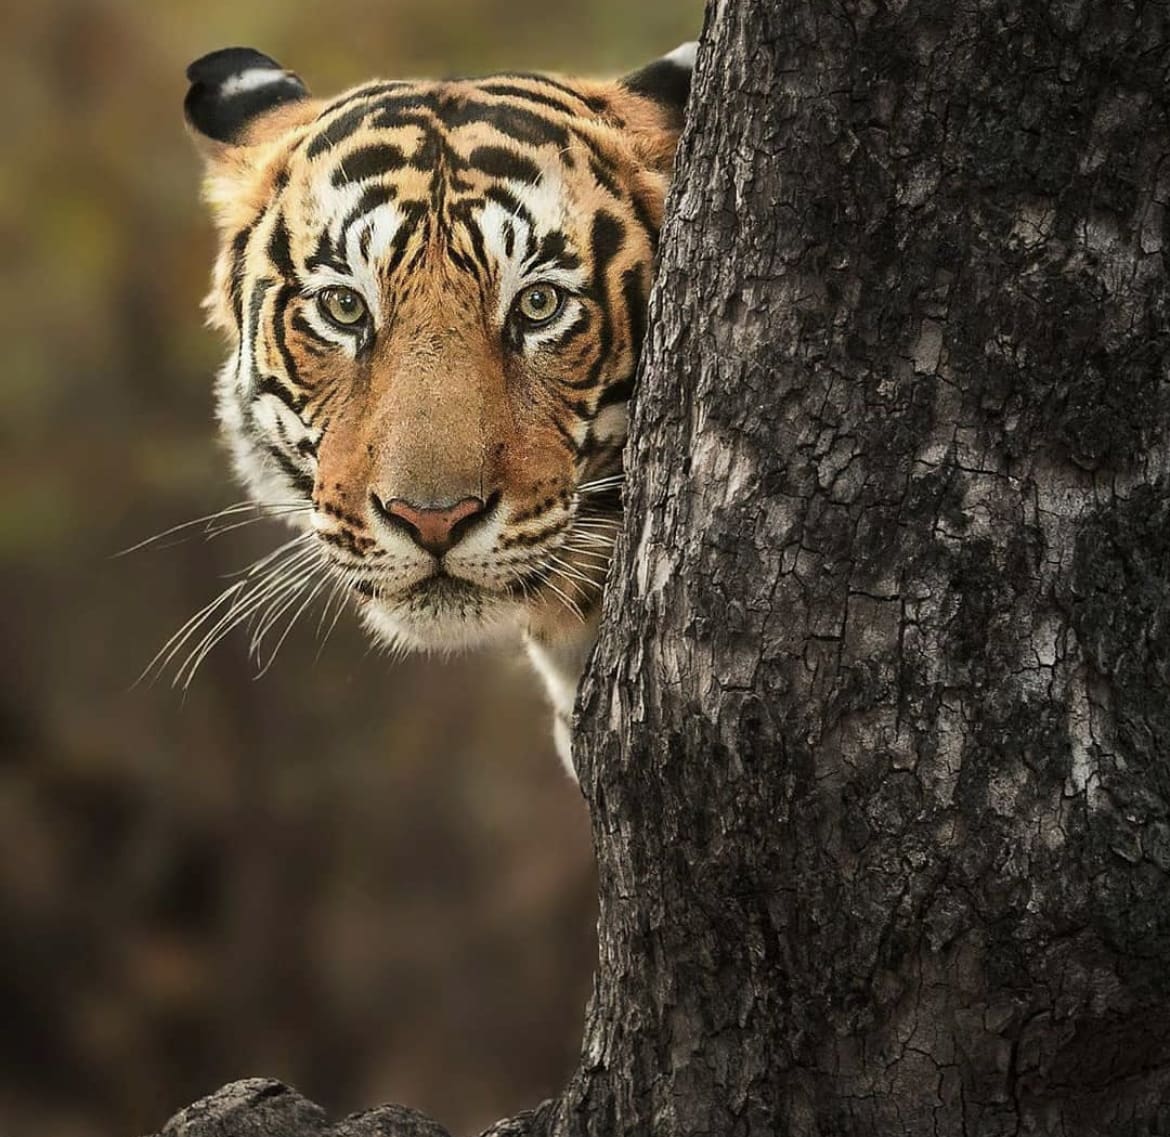 Tiger hiding behind a tree